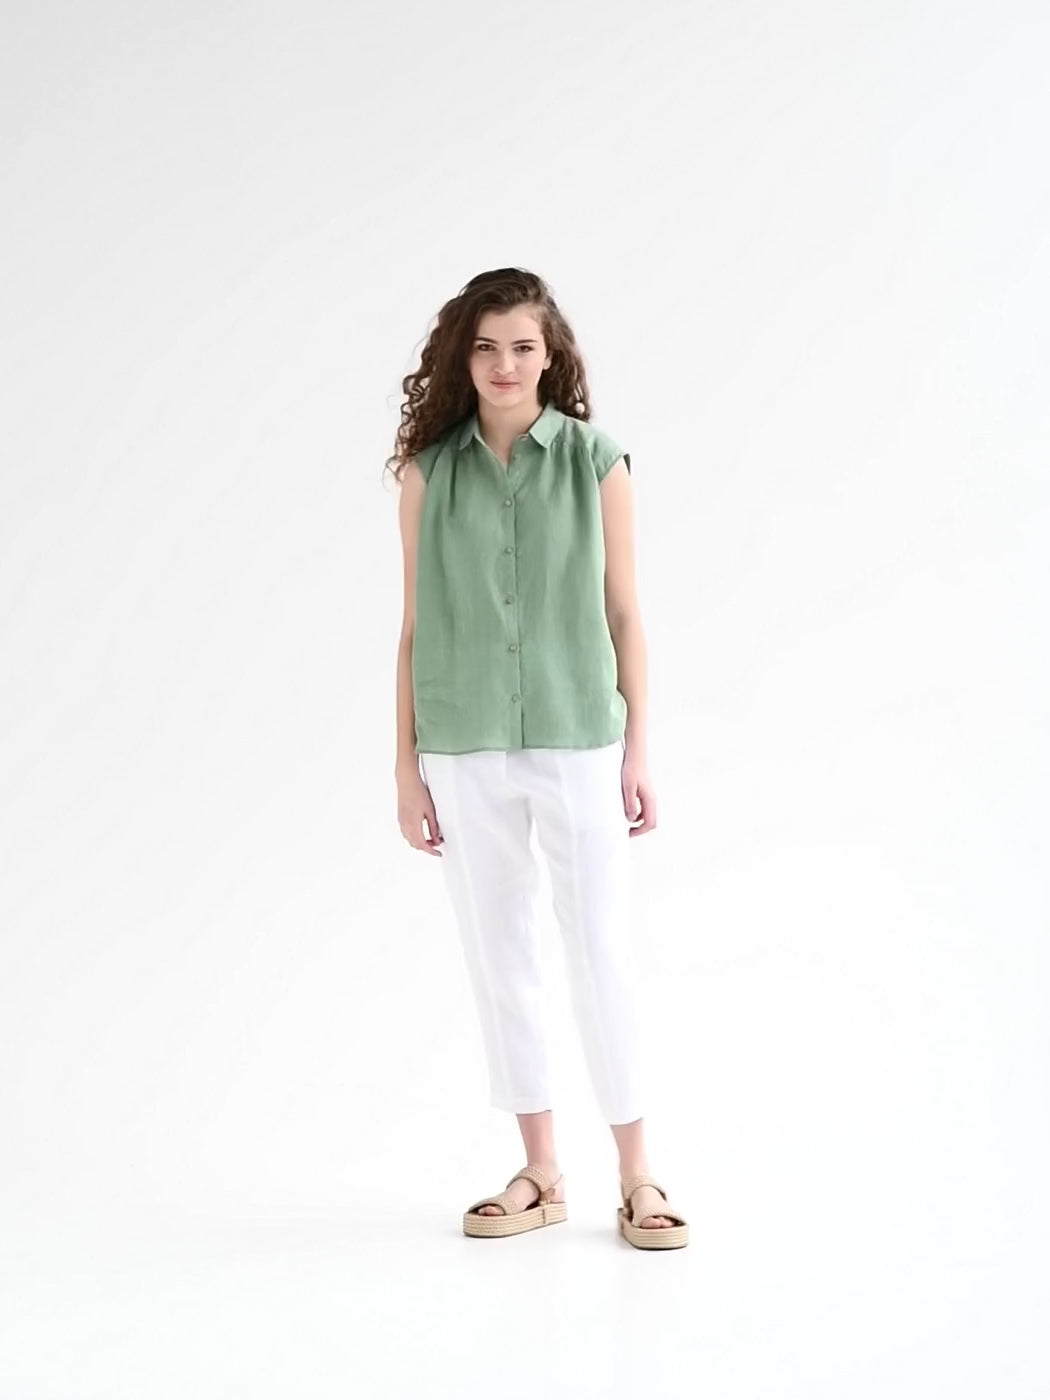 Lightweight linen shirt SEDONA in matcha green - MagicLinen